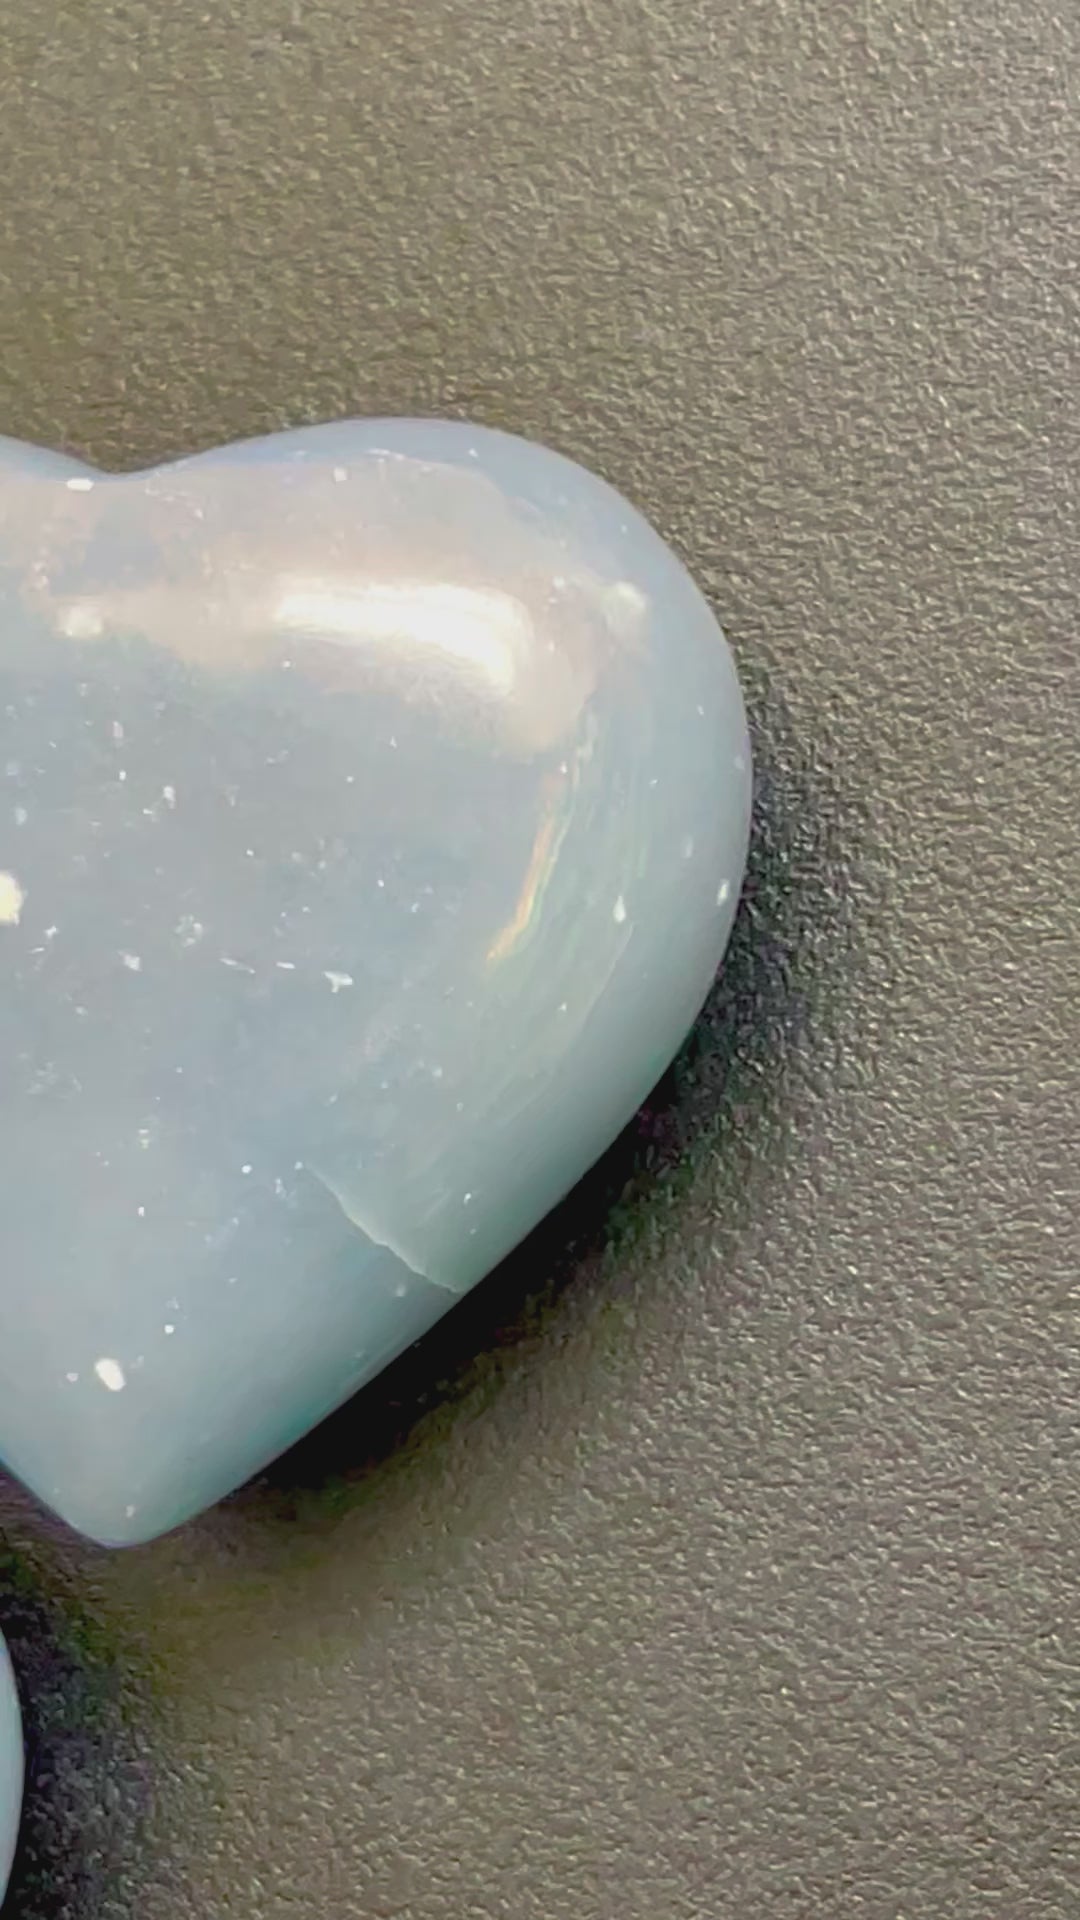 Angelite Heart Polished Natural Gemstones